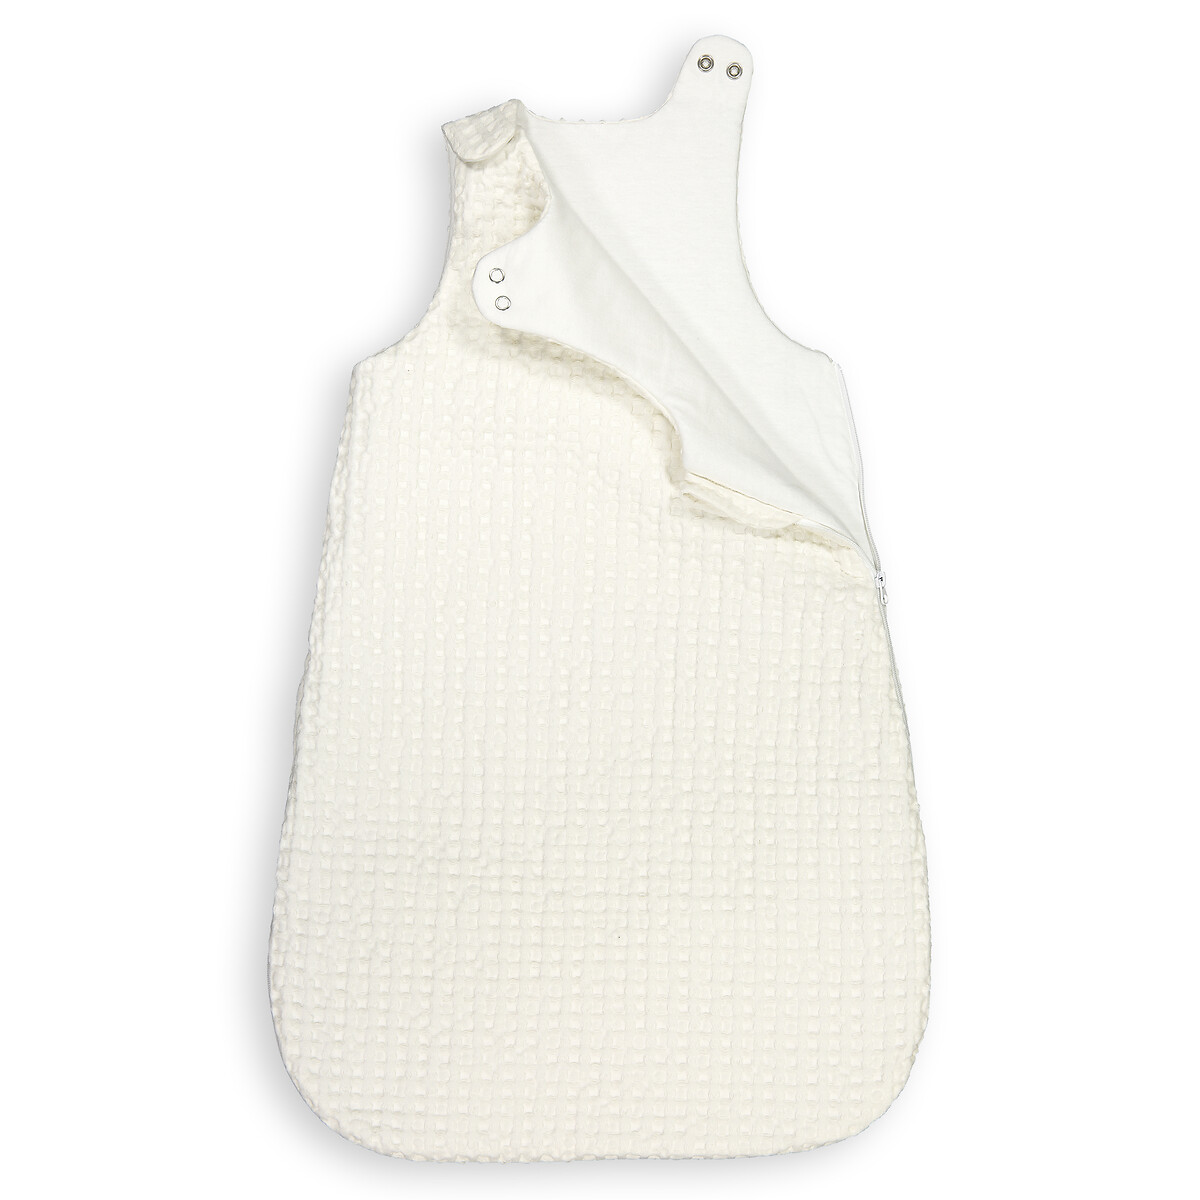 Конверт Для новорожденного с эффектом вафельной ткани 2 года - 86 см белый LaRedoute, размер 2 года - 86 см - фото 2